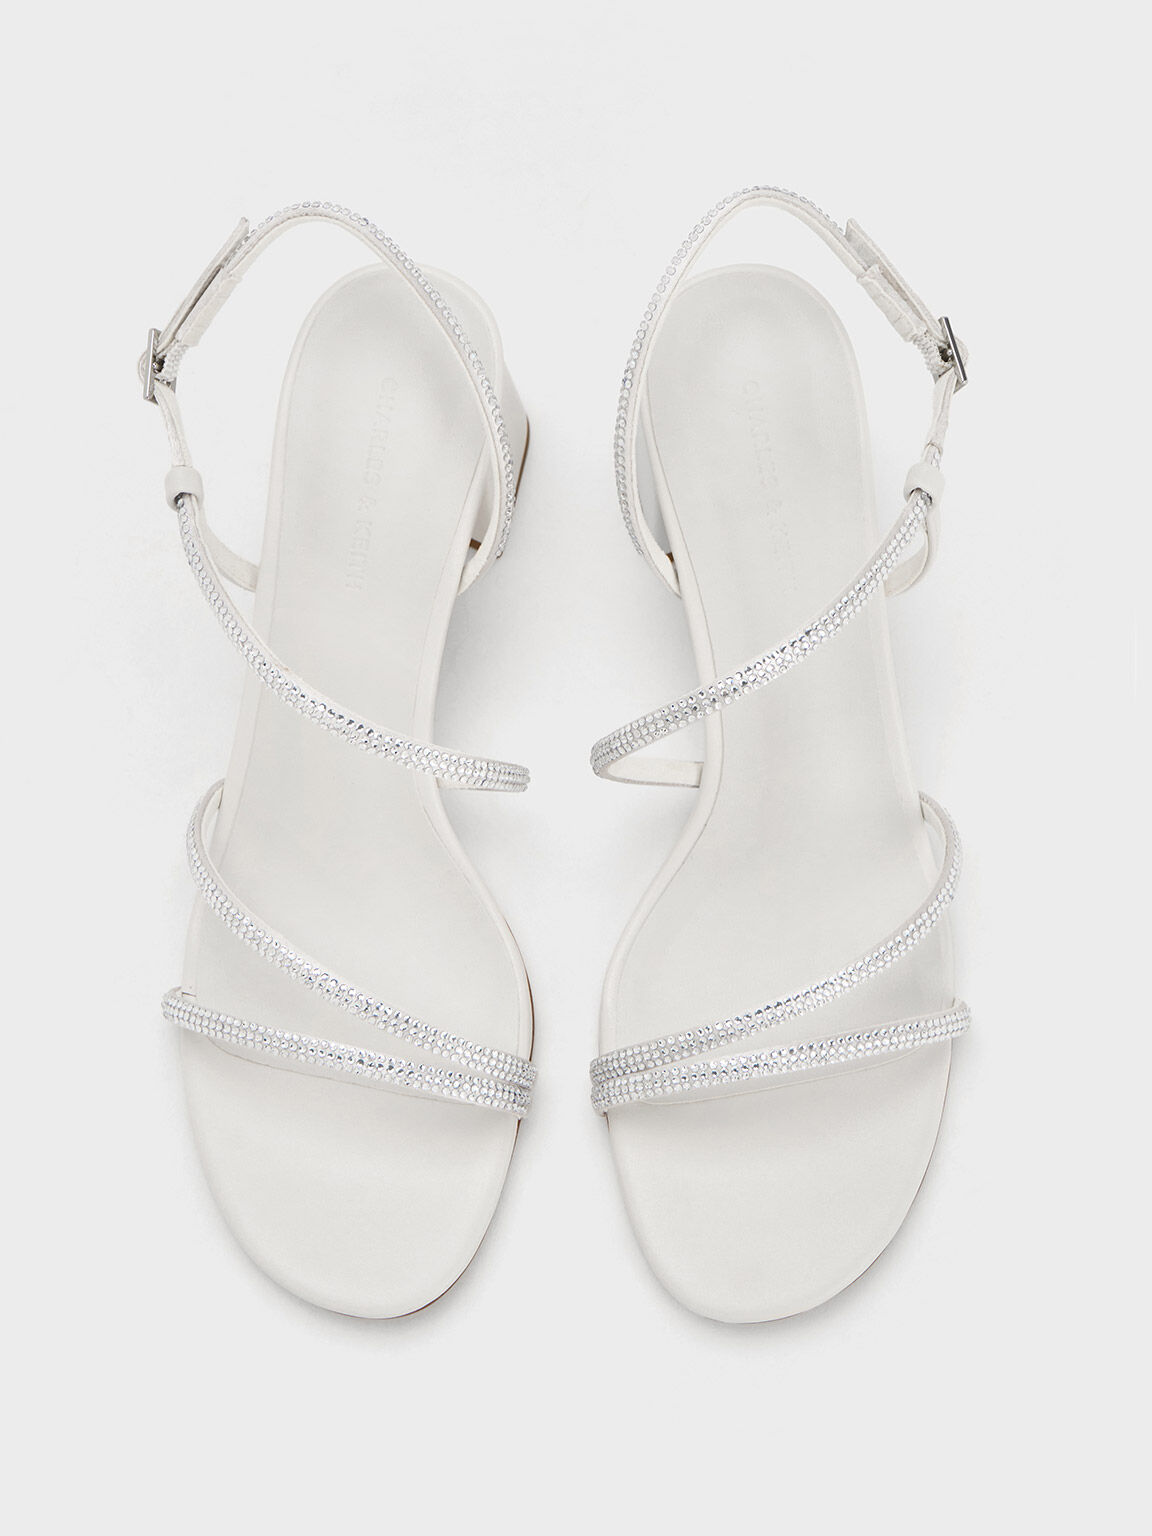 Sandal Strappy Satin Crystal-Embellished, White, hi-res